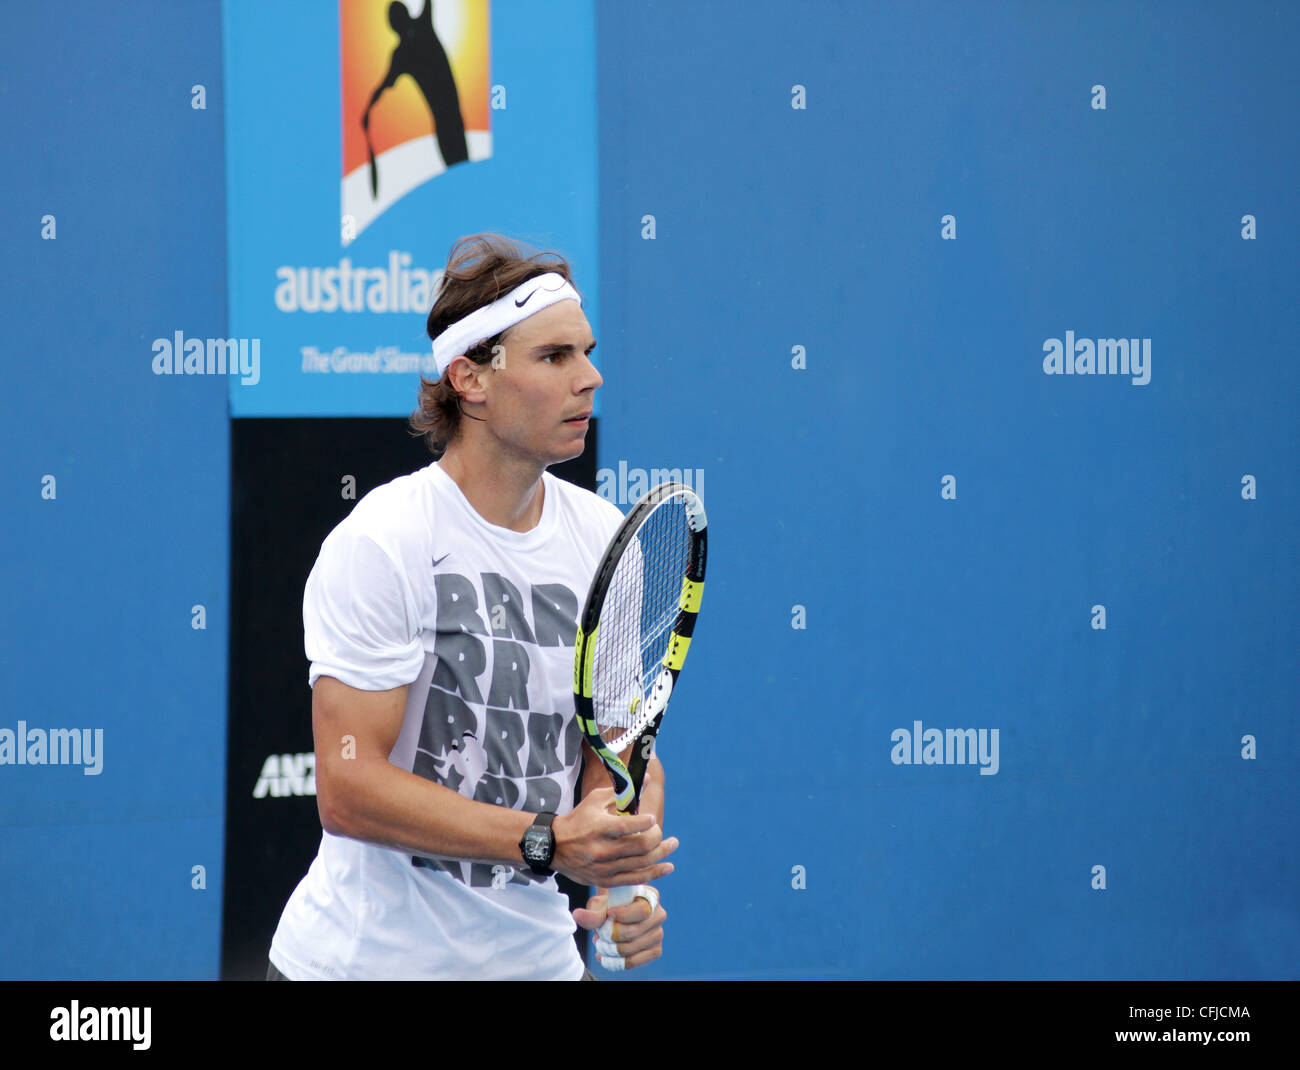 MELBOURNE, AUSTRALIE - janvier 21, 2012 : numéro 2 mondial ATP Rafael Nadal  joueur de tennis hits sur une pratique cour Janvier 21, 2012 Photo Stock -  Alamy